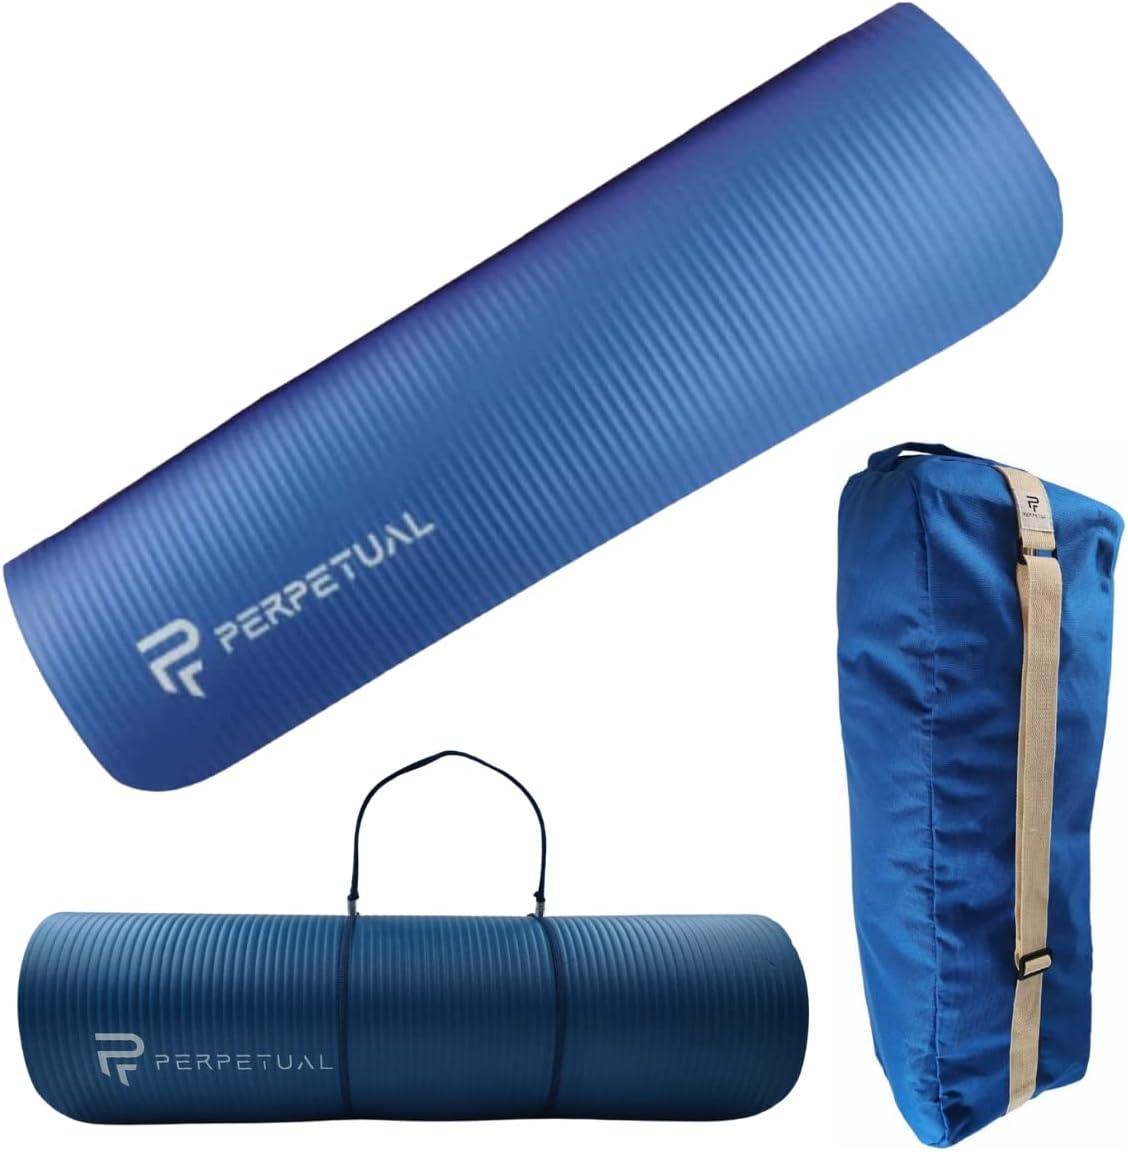 Kit Esterilla De Yoga Y Pilates Perpetual De 10mm Con Bolsa De Transporte Y Correa  MKP